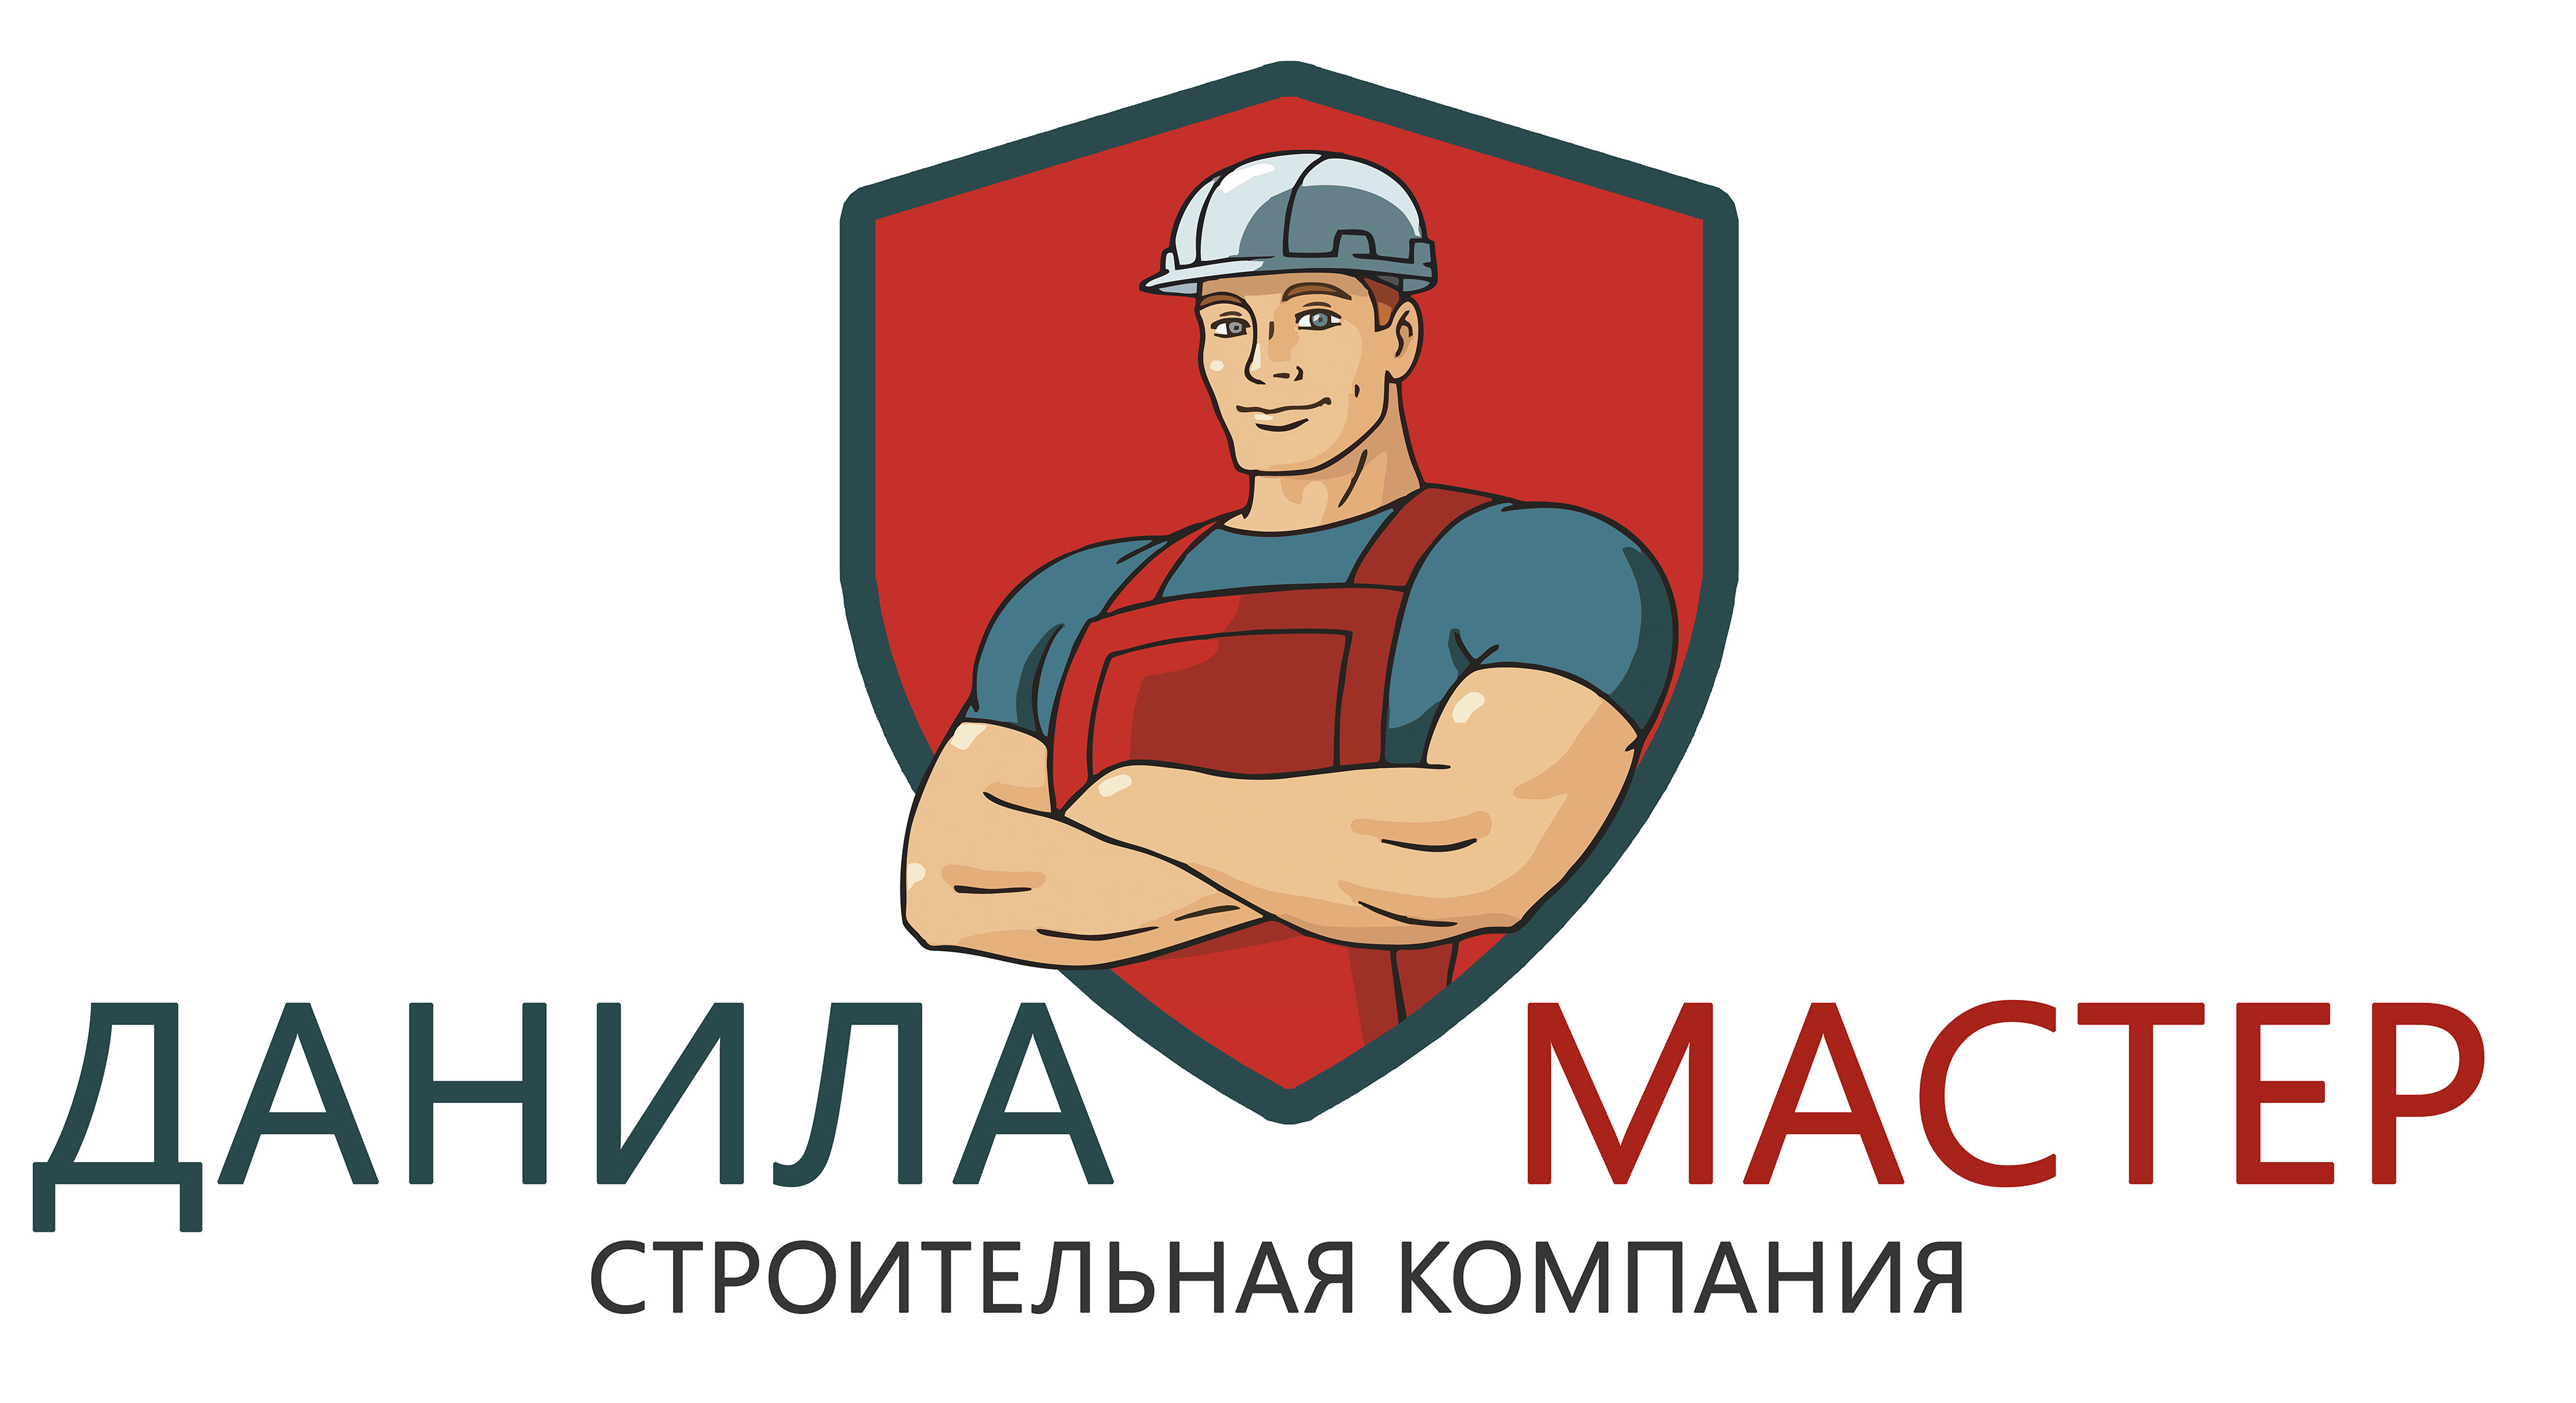 Мастер за 4 дня. Мастер логотип. Логотип ремонтно строительной компании.